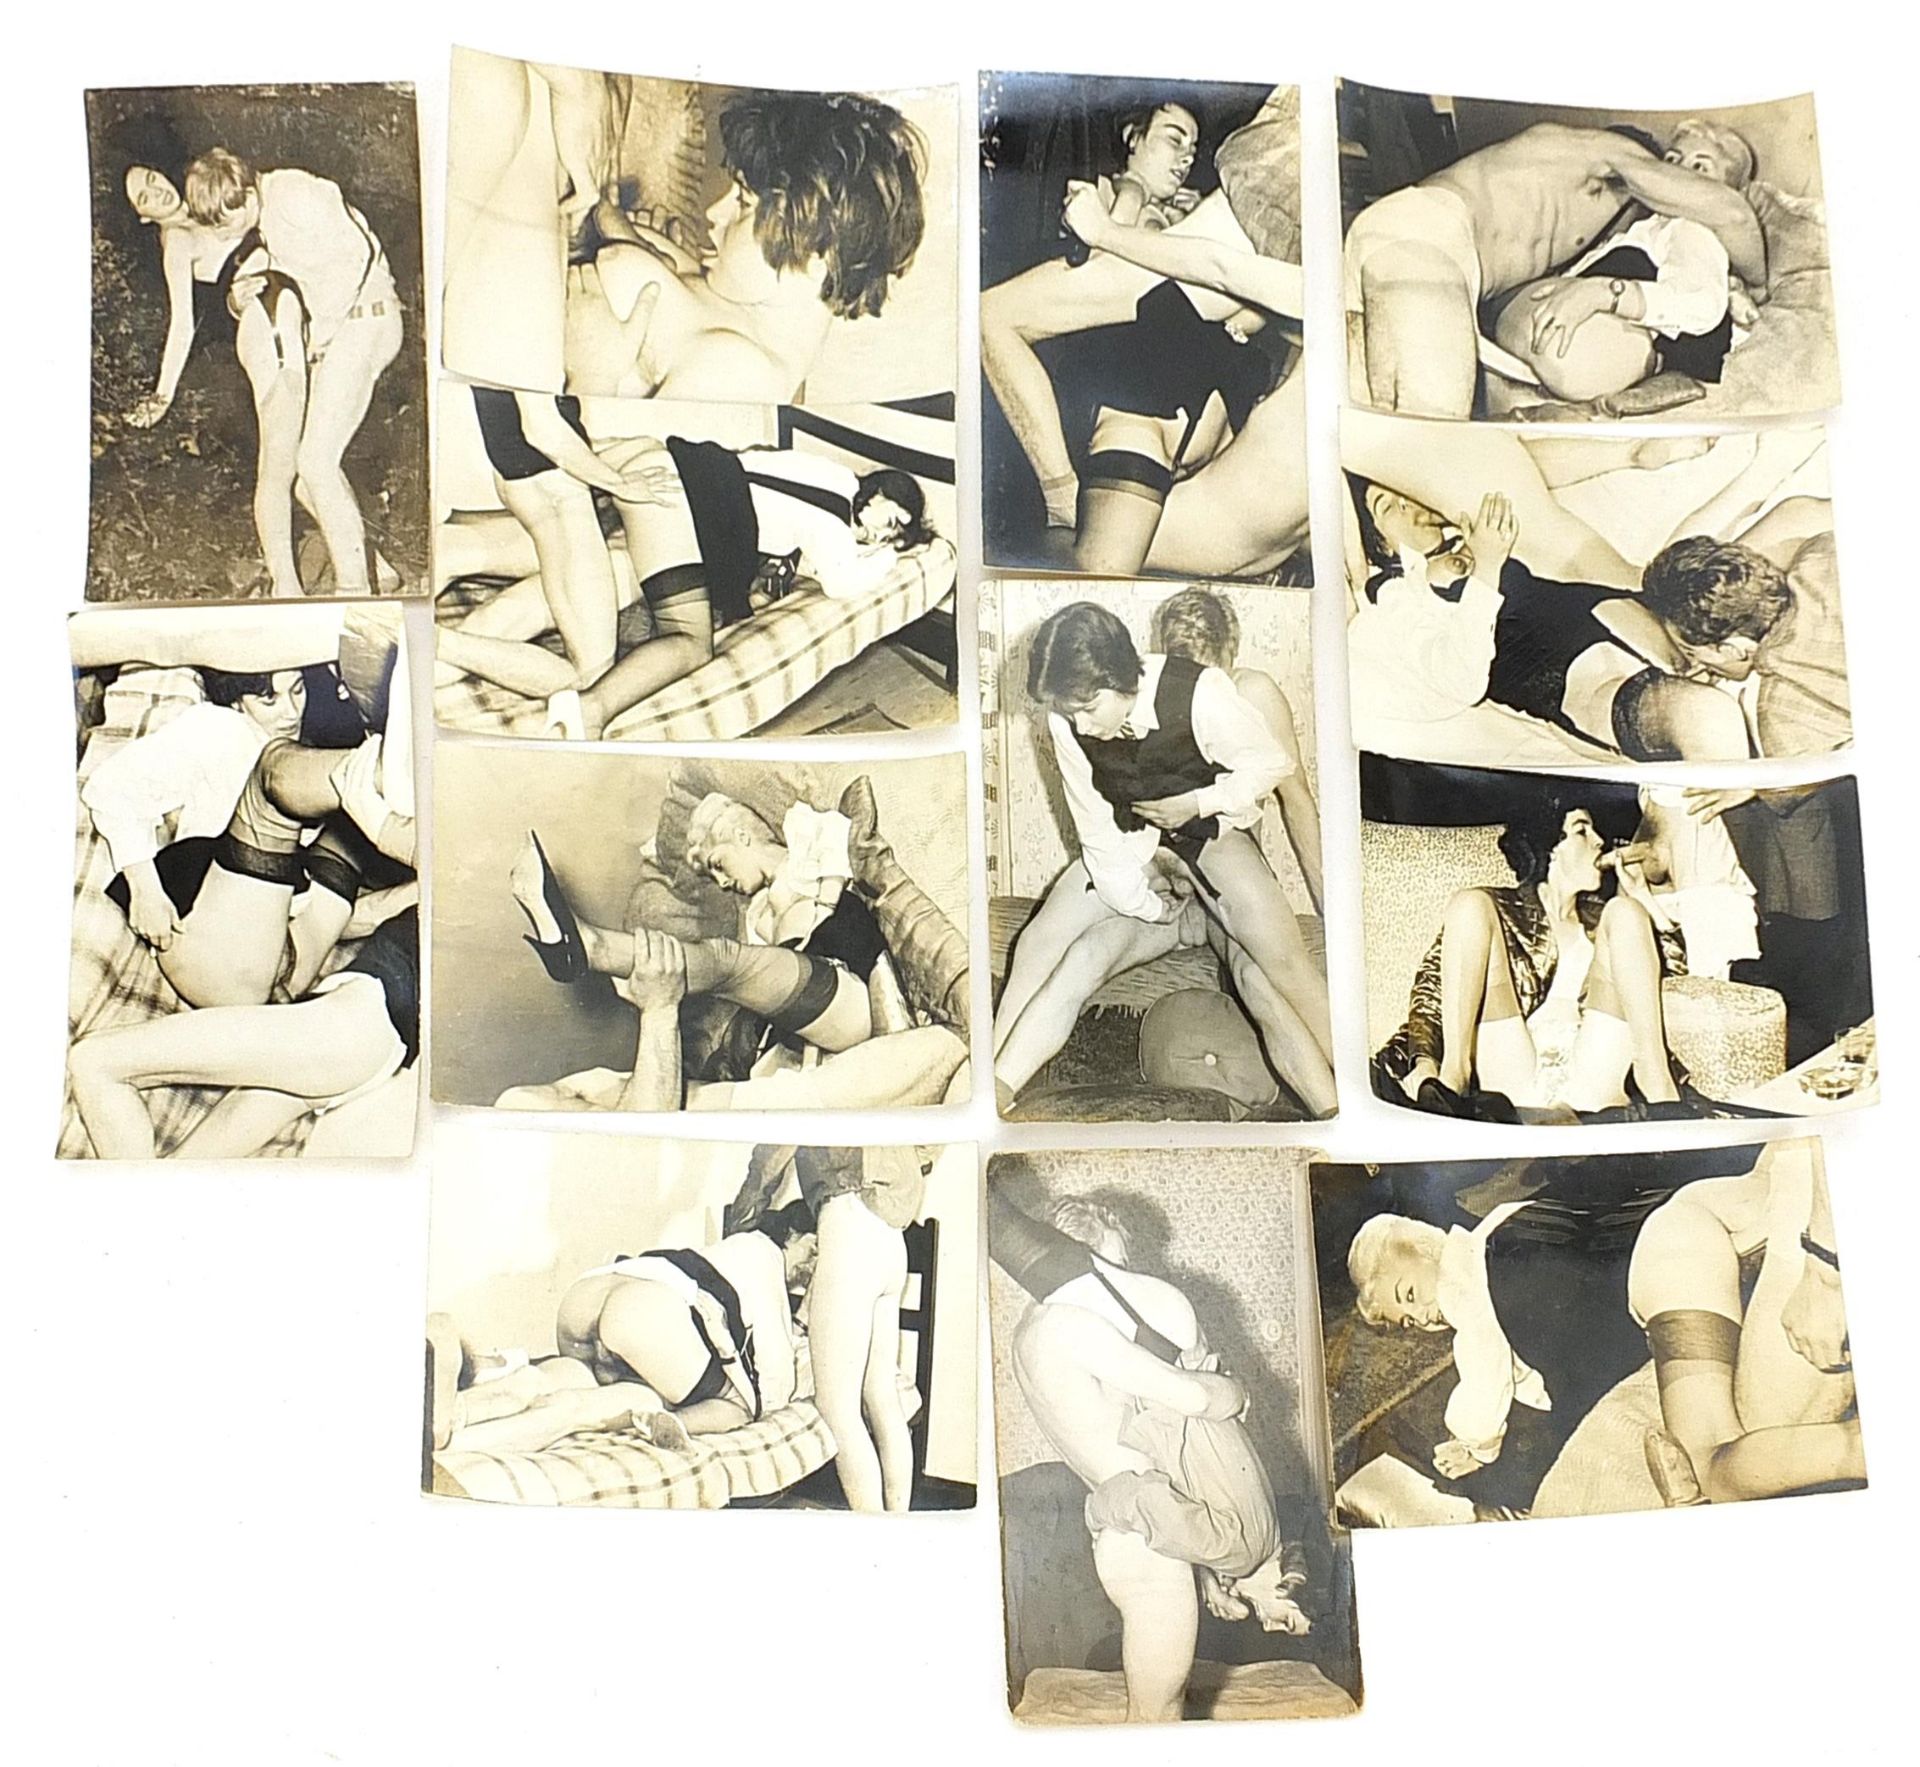 Thirteen 1950's black and white erotic photographs